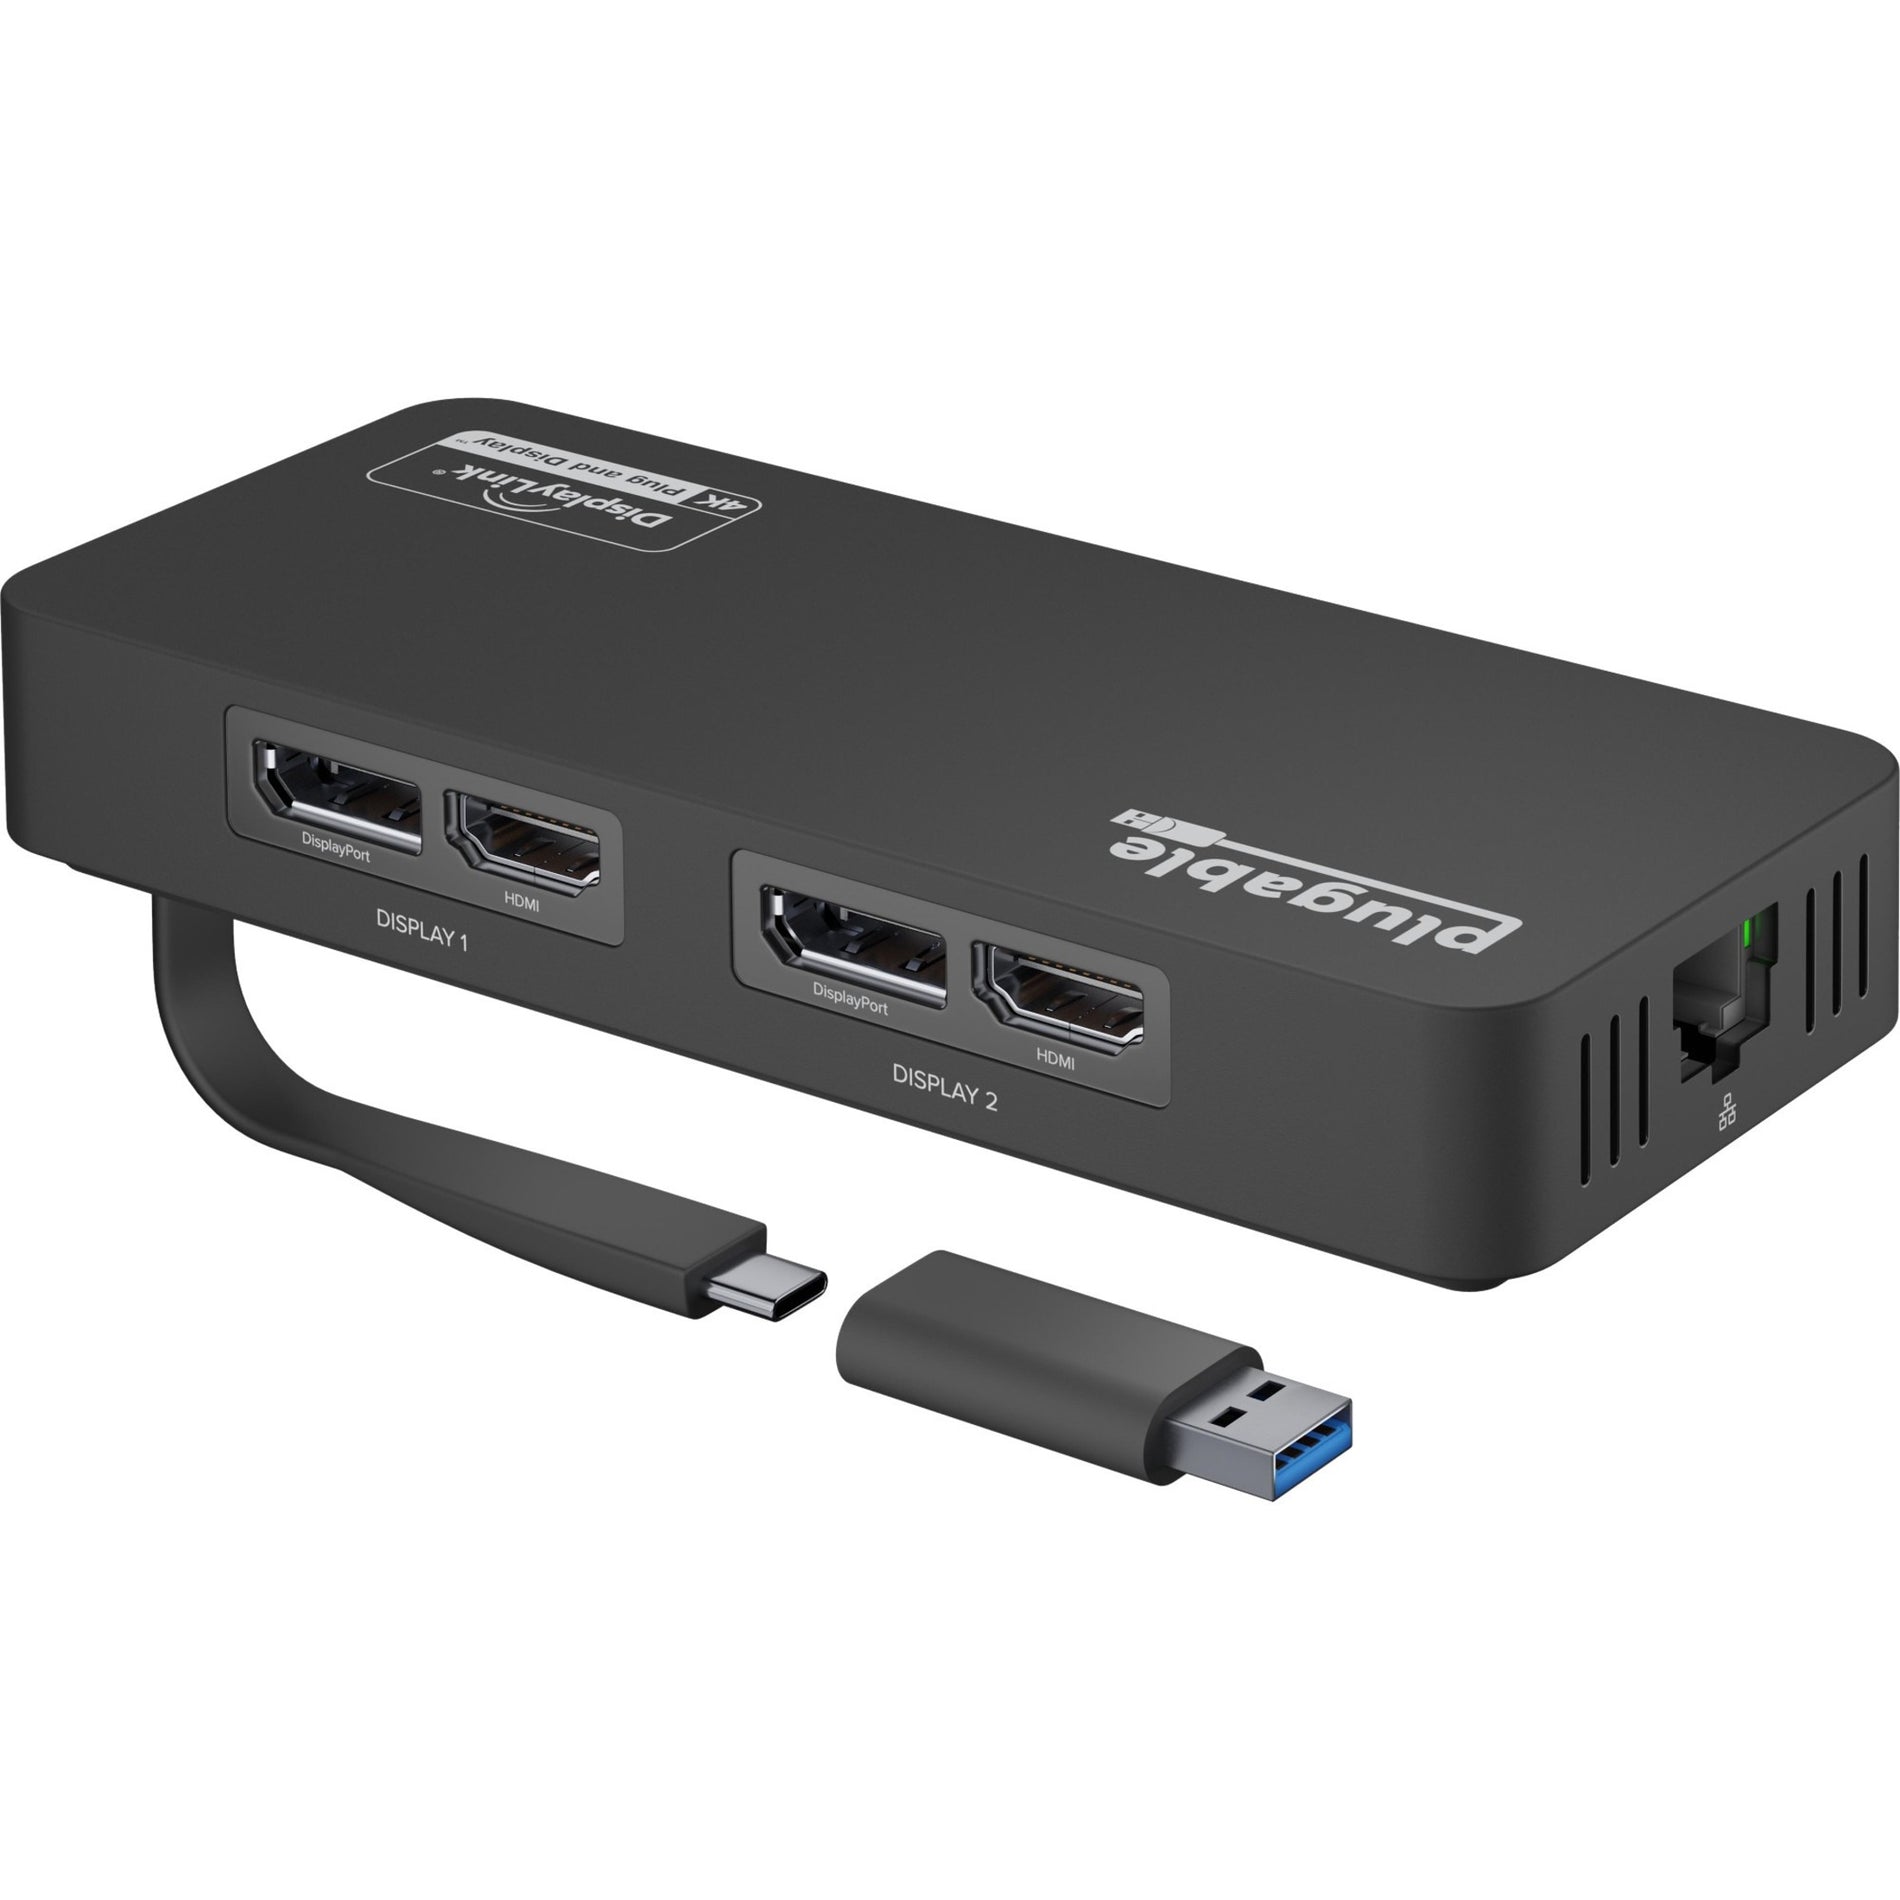 Adaptador Plugable USBC-6950UE USB Tipo C Doble 4K HDMI y Ethernet Gigabit Conecta Dos Monitores y Ethernet a tu Dispositivo USB-C. Marca: Plugable. Traduce marca.